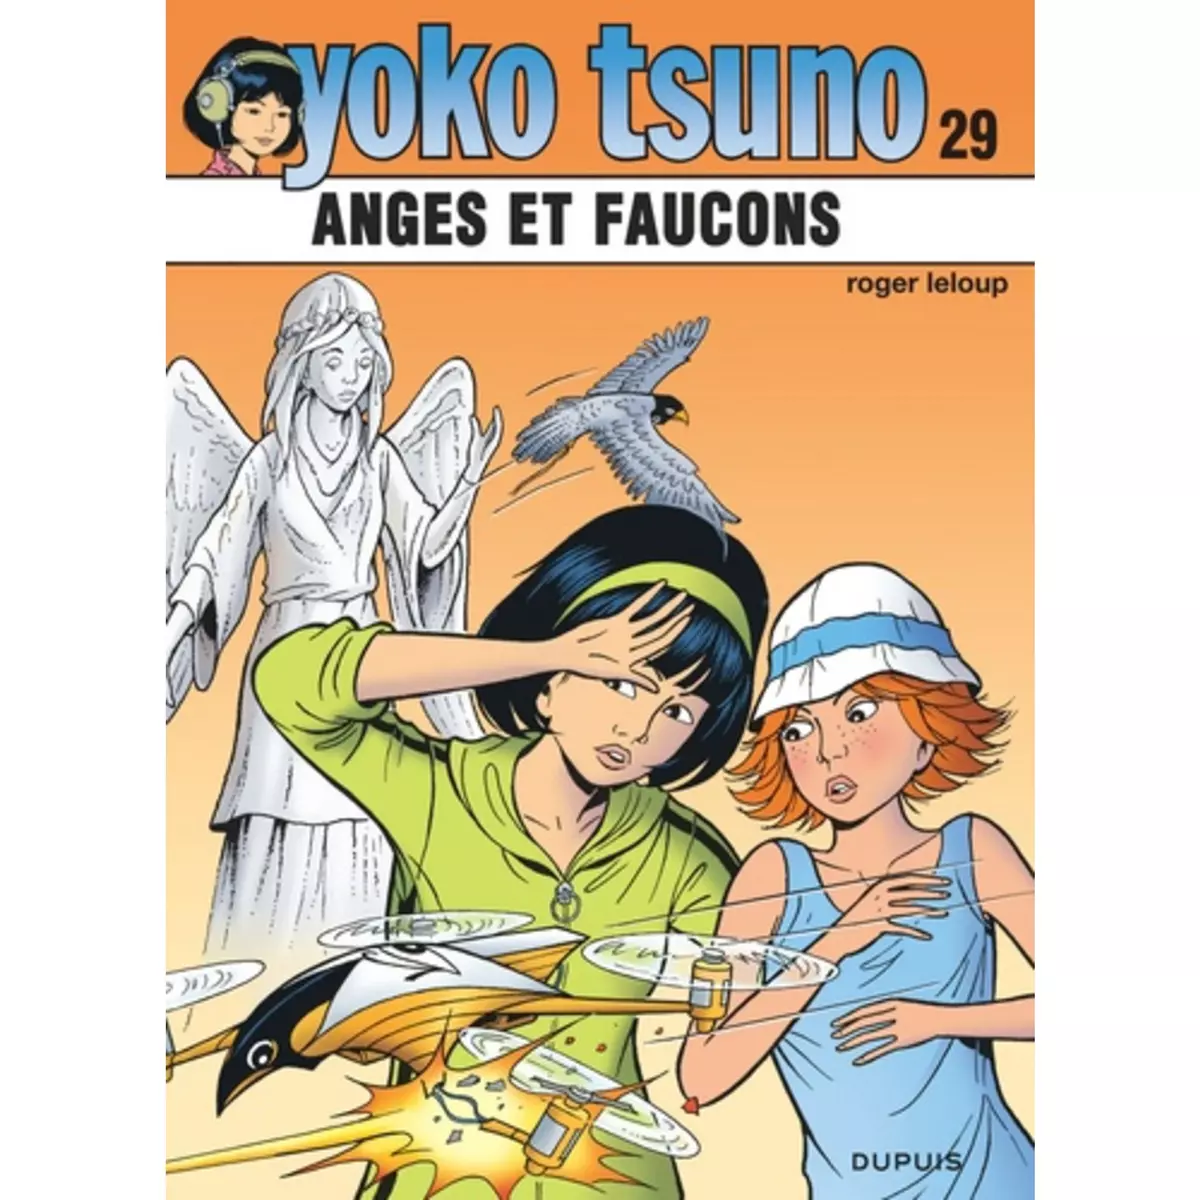  YOKO TSUNO TOME 29 : ANGES ET FAUCONS, Leloup Roger